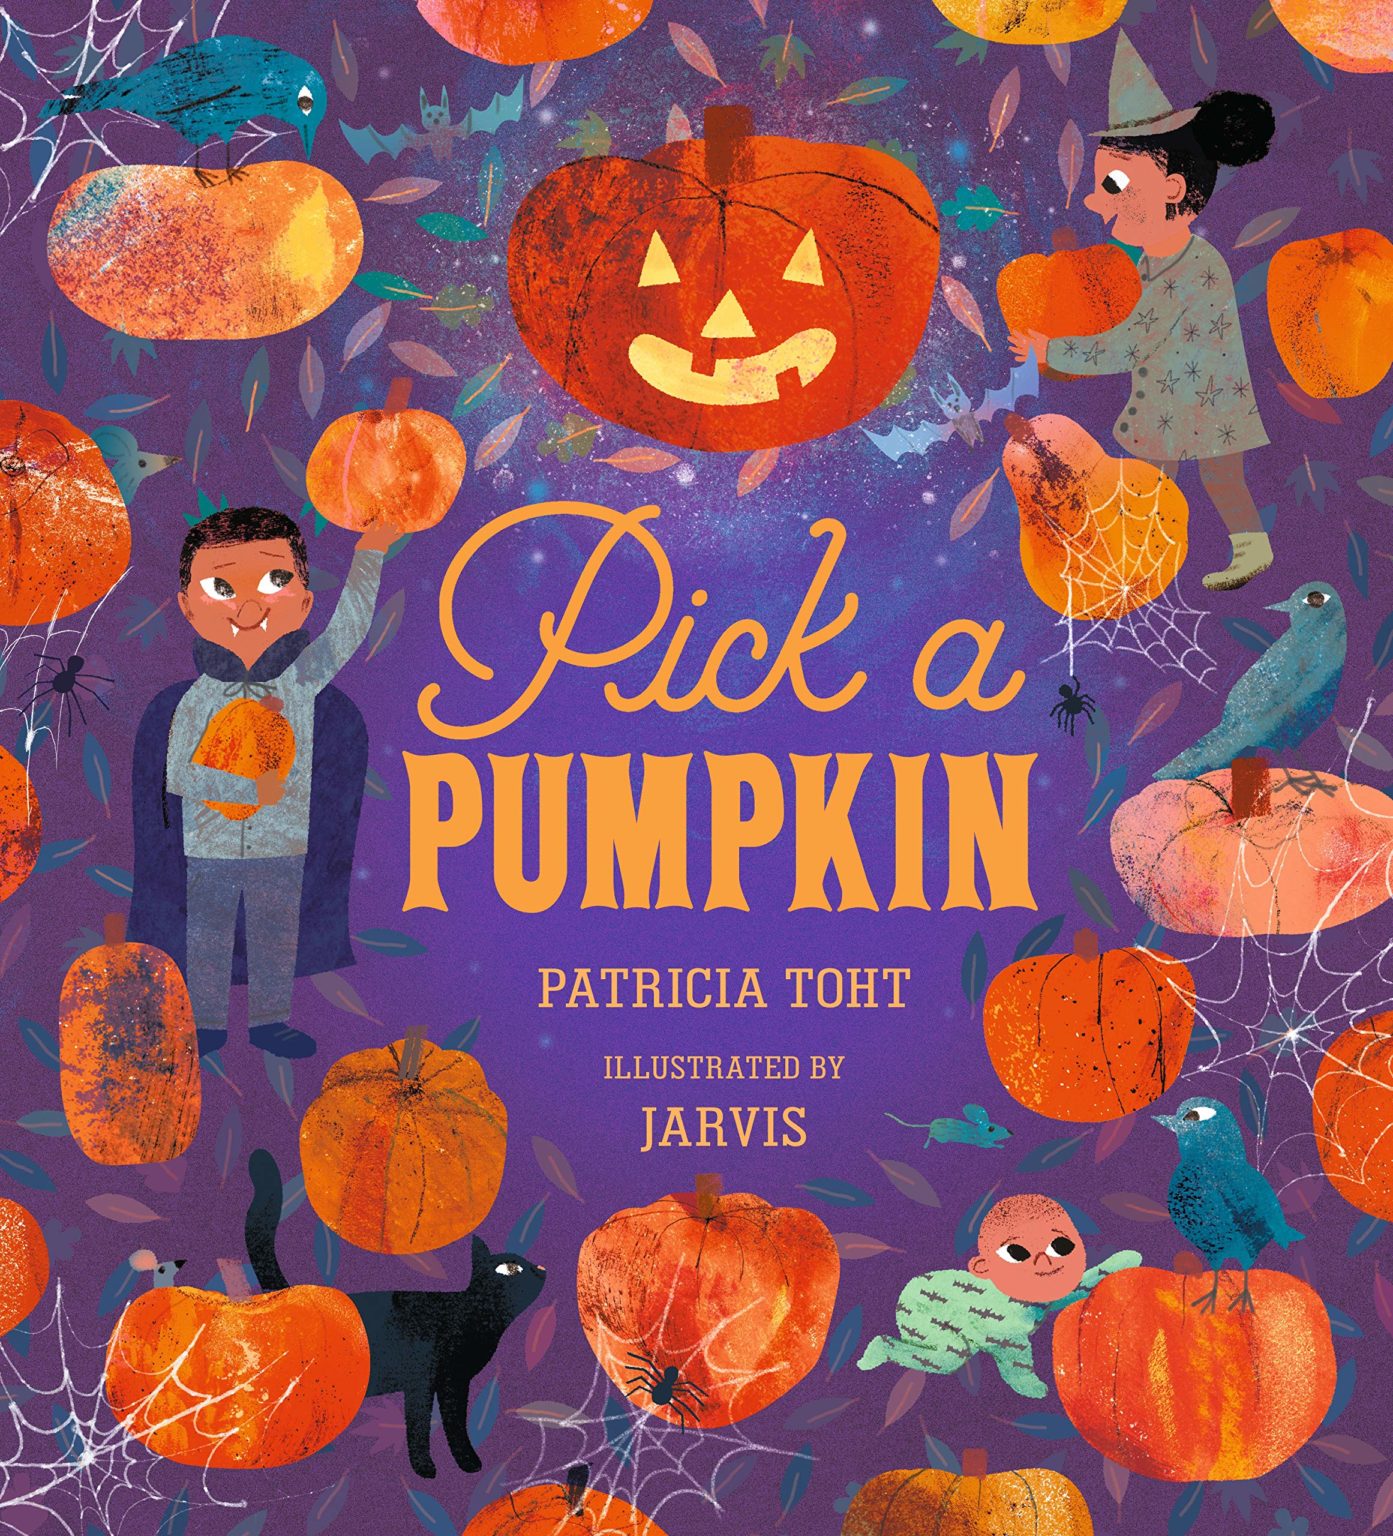 35 Best Halloween Books for KidsWeAreTeachers